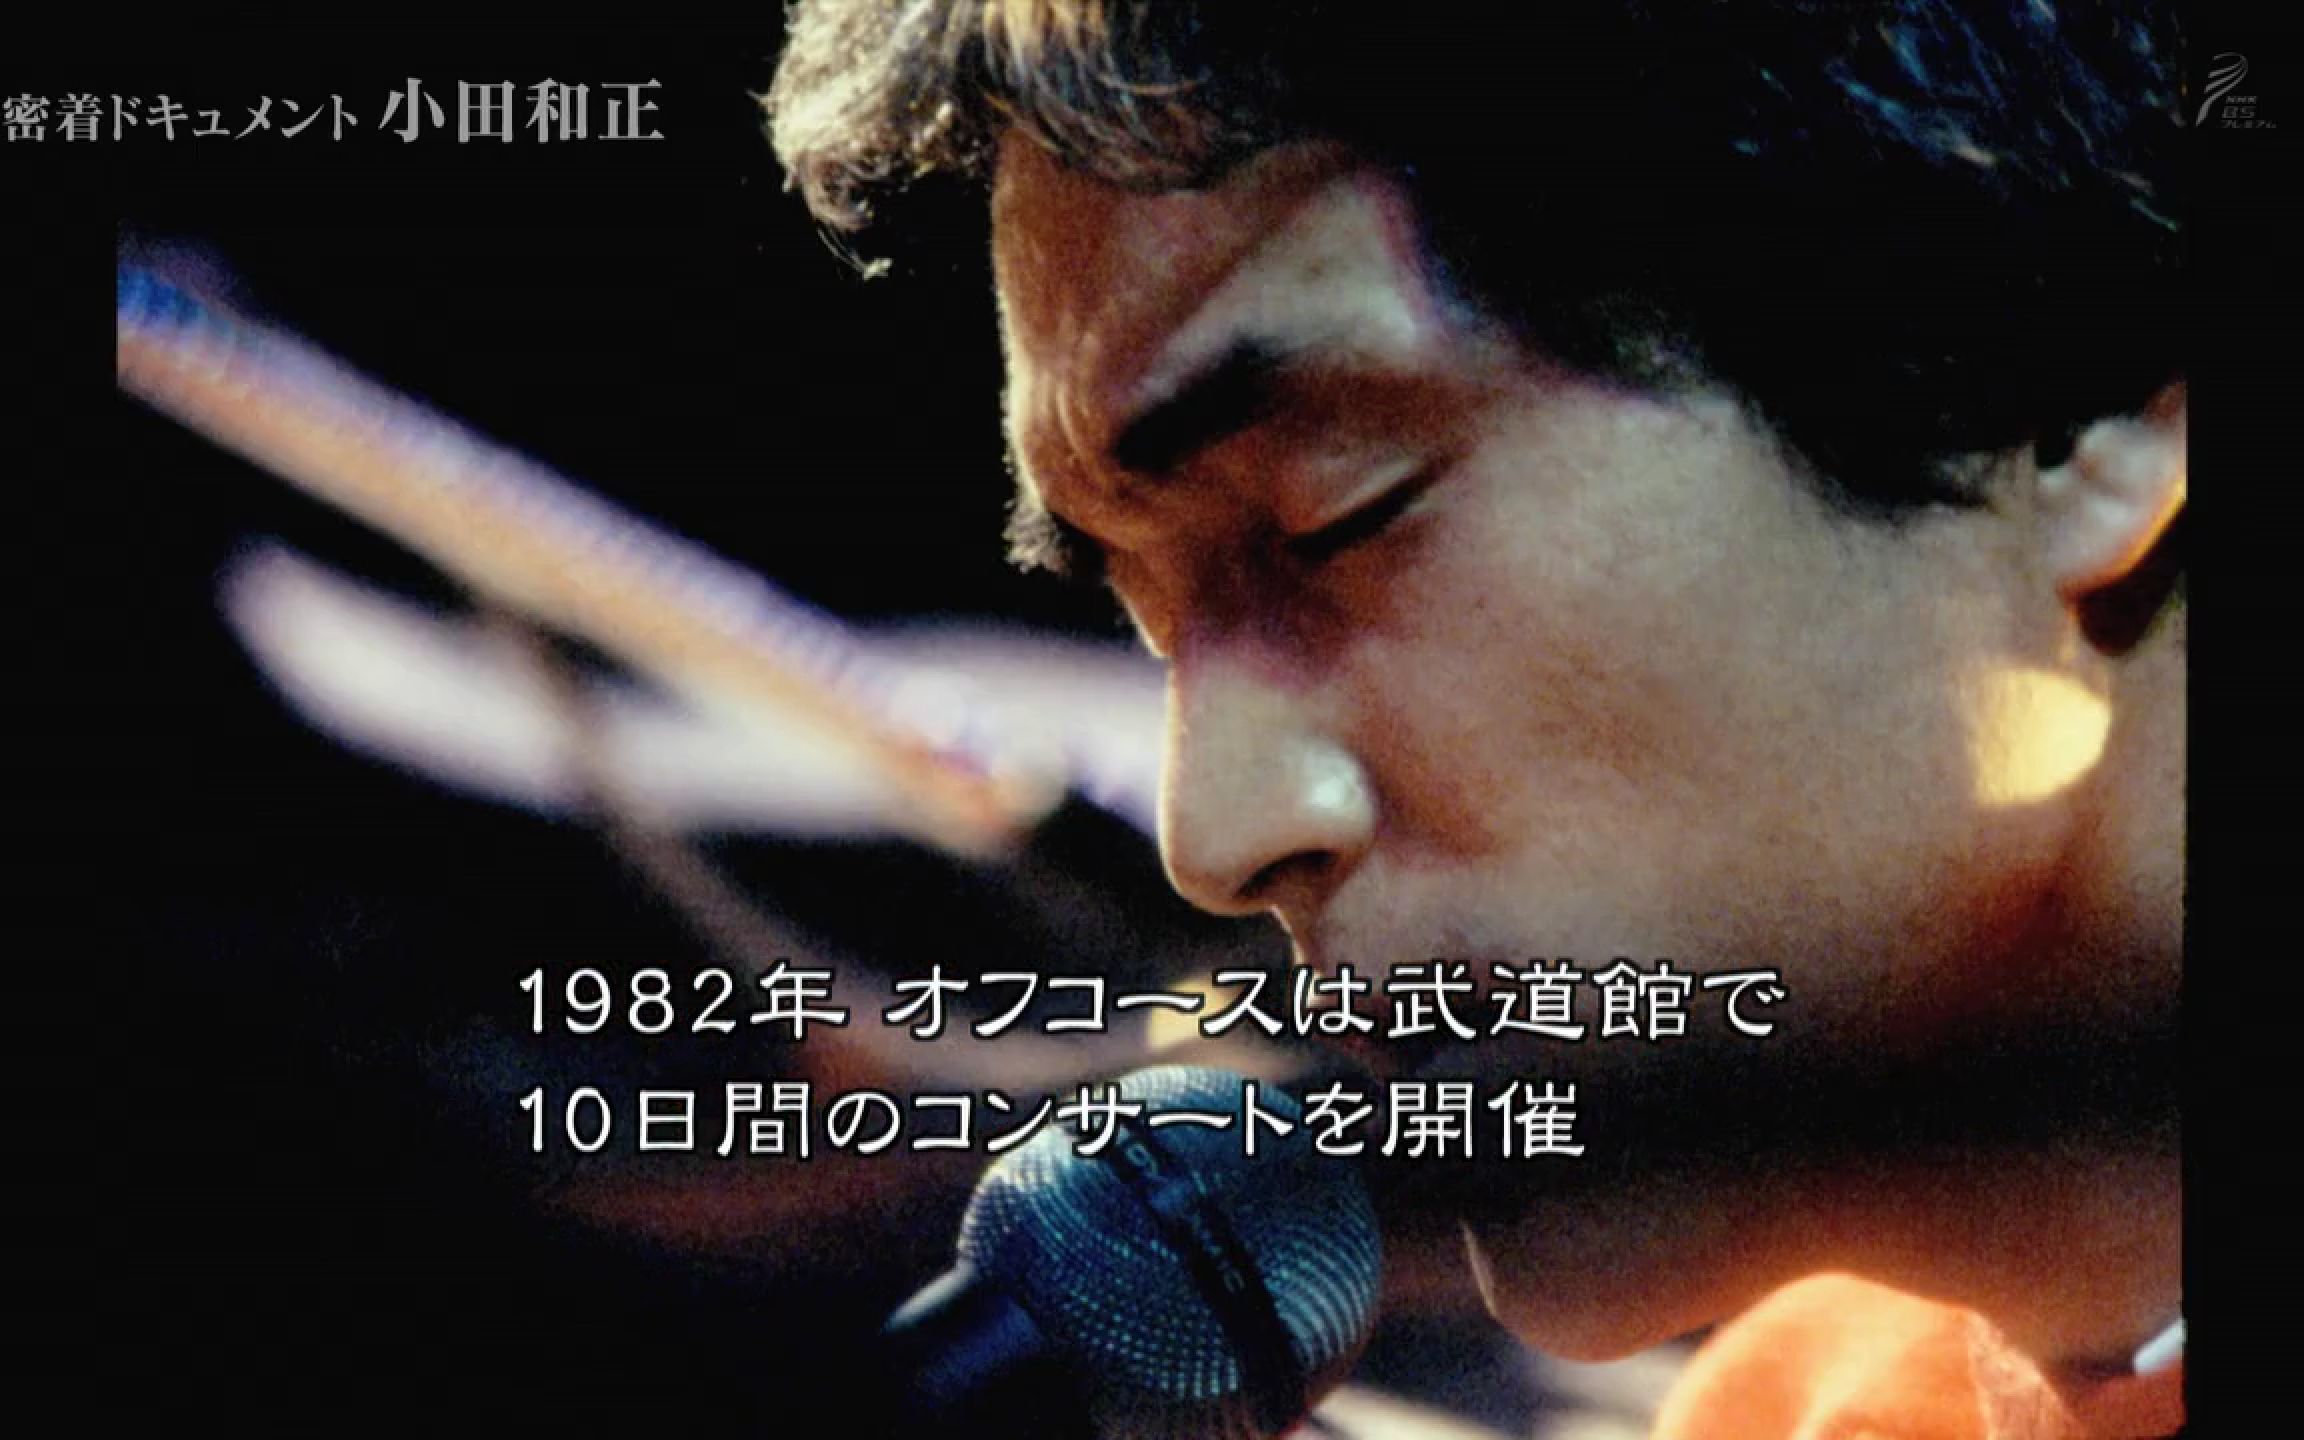 【NHK纪录片】跟踪采访纪录小田和正~每天都“再次唱响”~【MT字幕 